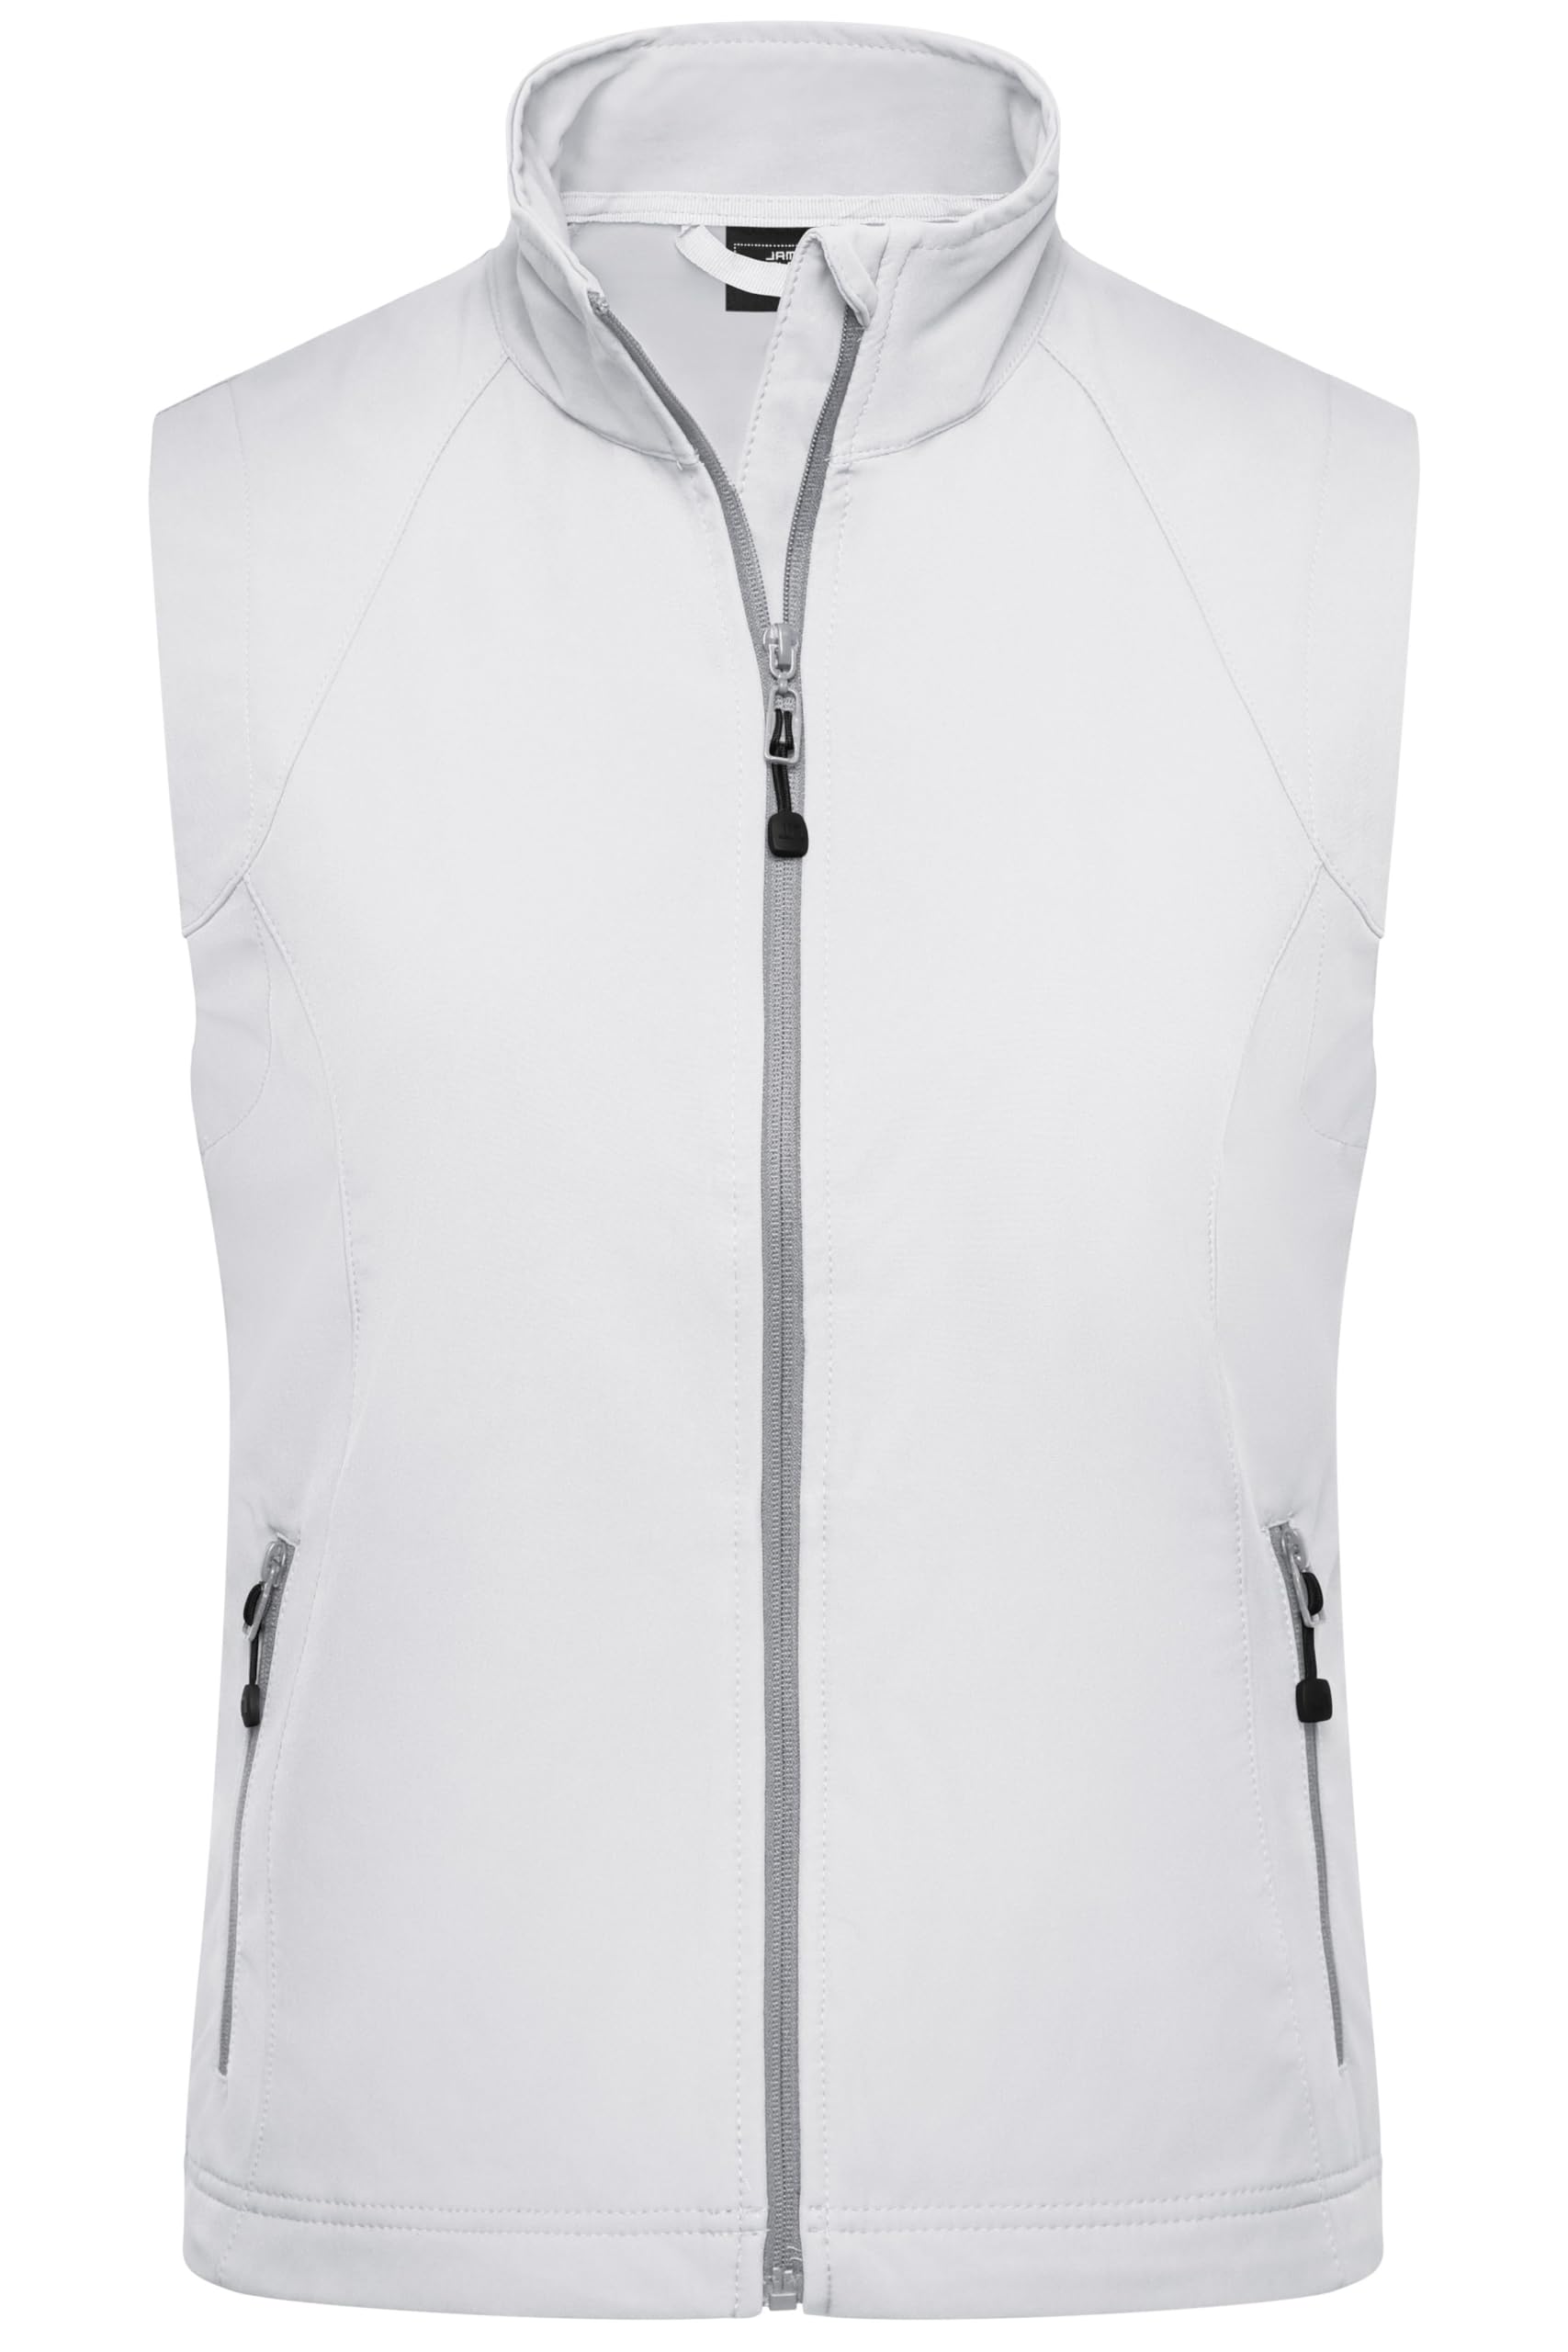 James & Nicholson Damen Softshell Weste - Taillierte Weste aus elastischem Softshell | Farbe: off-white | Grösse: L